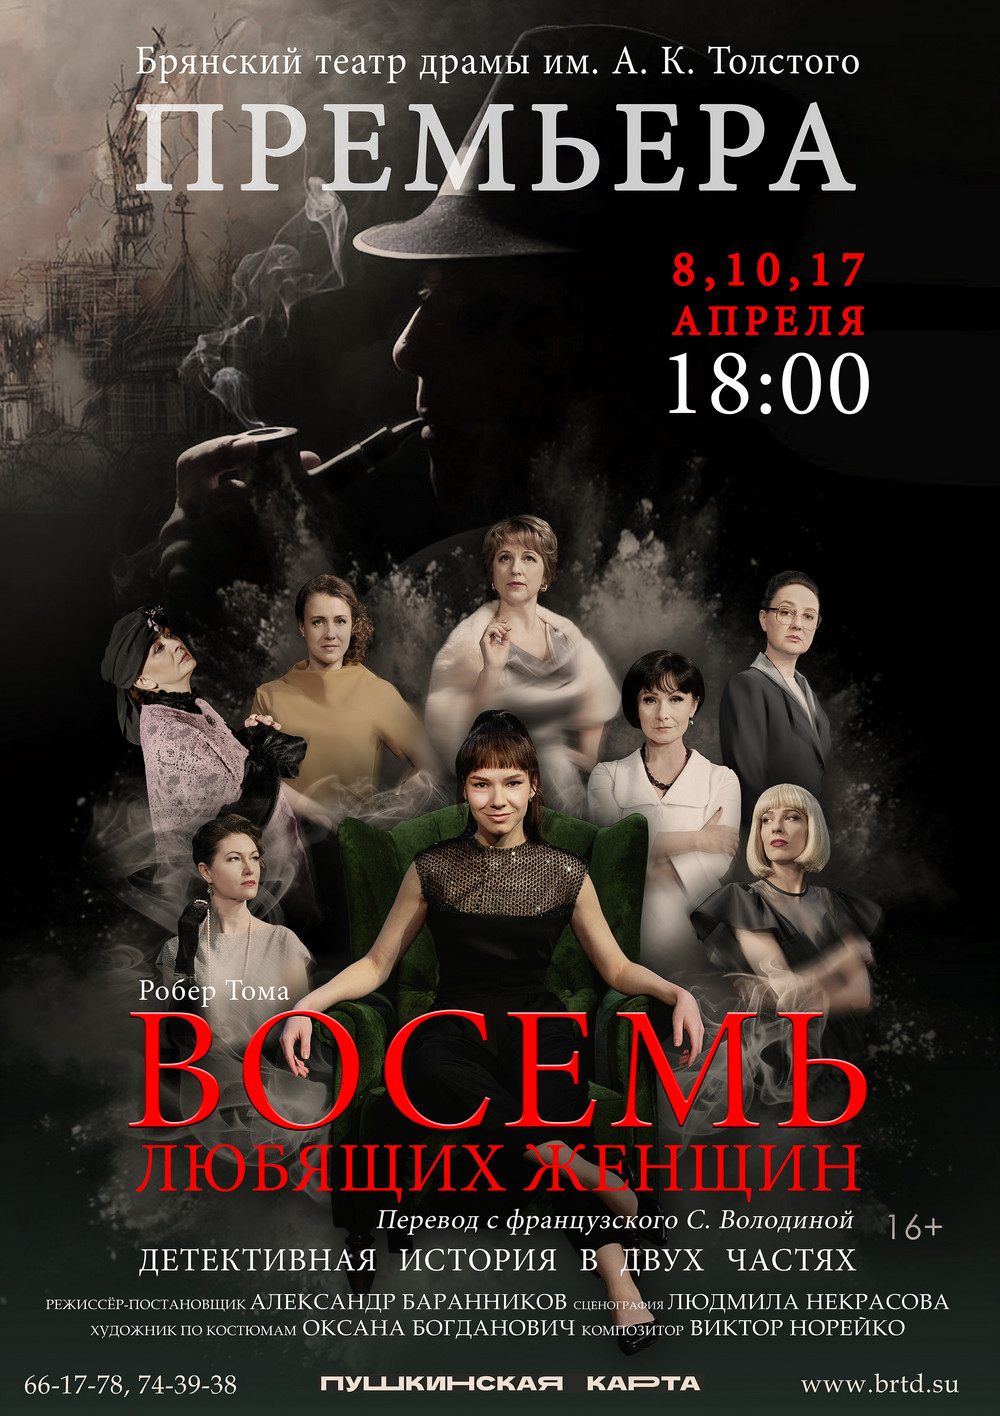 17 апреля в Брянске состоится спектакль "Восемь любящих женщин"